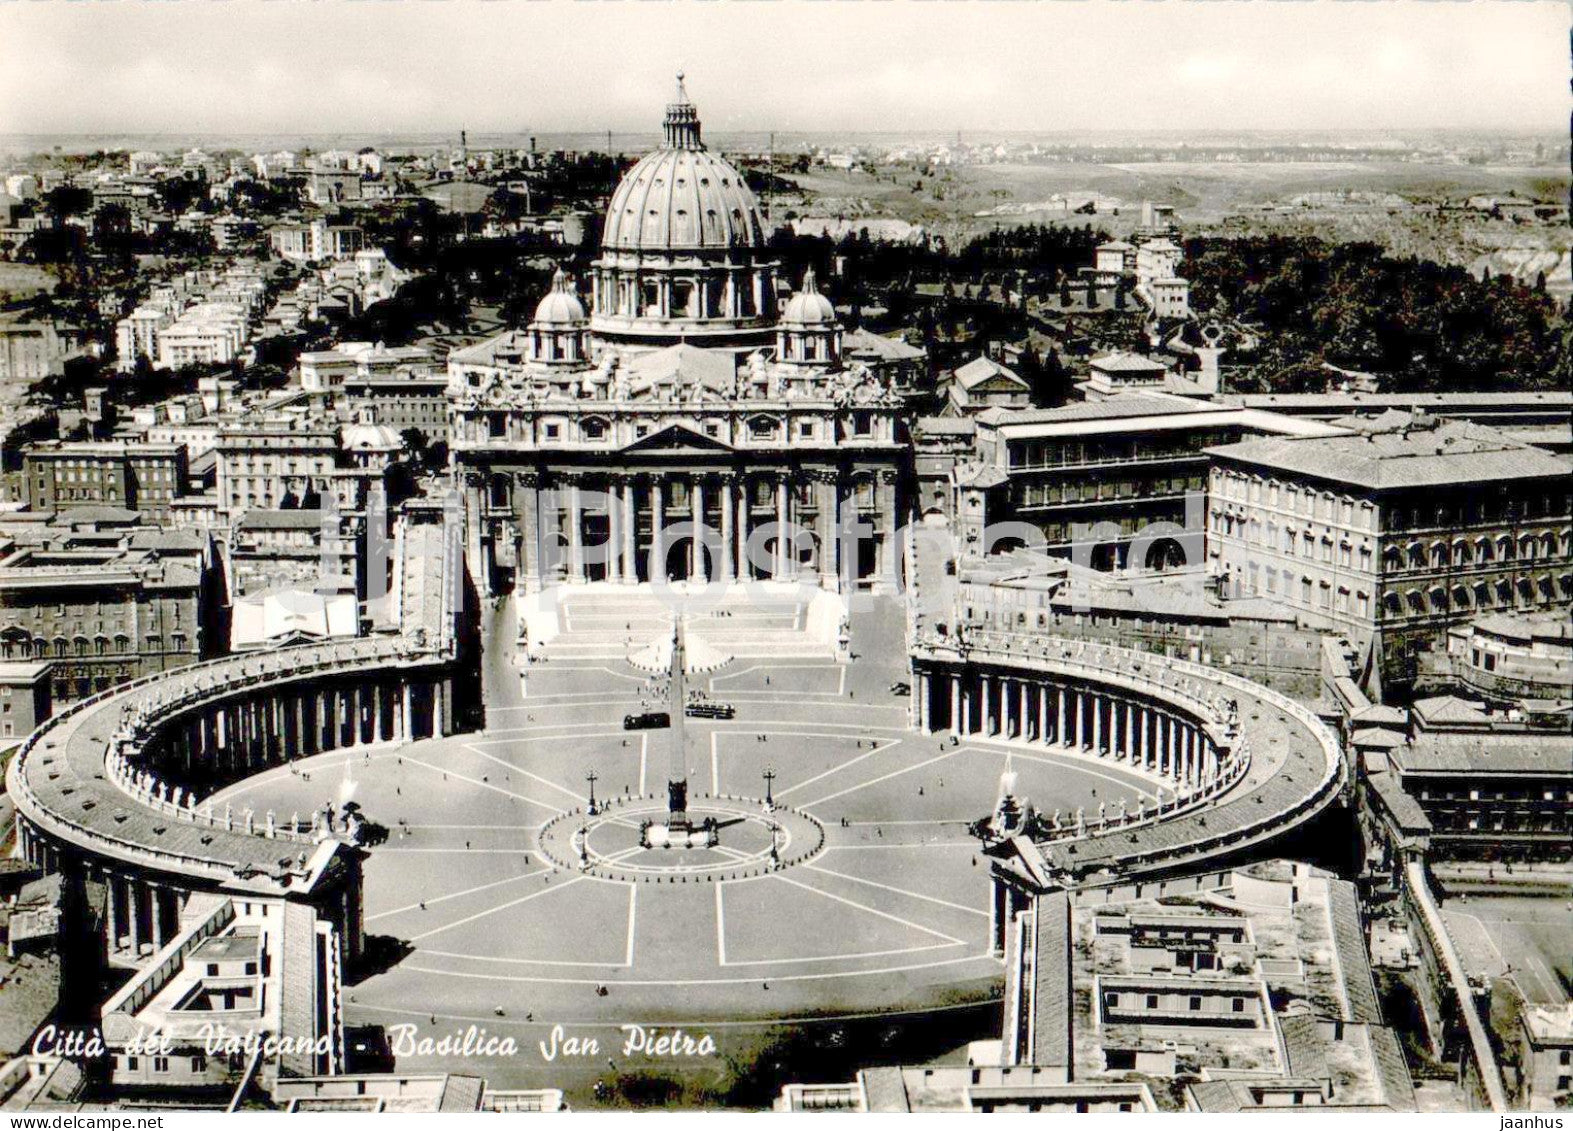 Citta del Vaticano - Basilica San Pietro - cathedral - 9 - Italy - Vatican - unused - JH Postcards